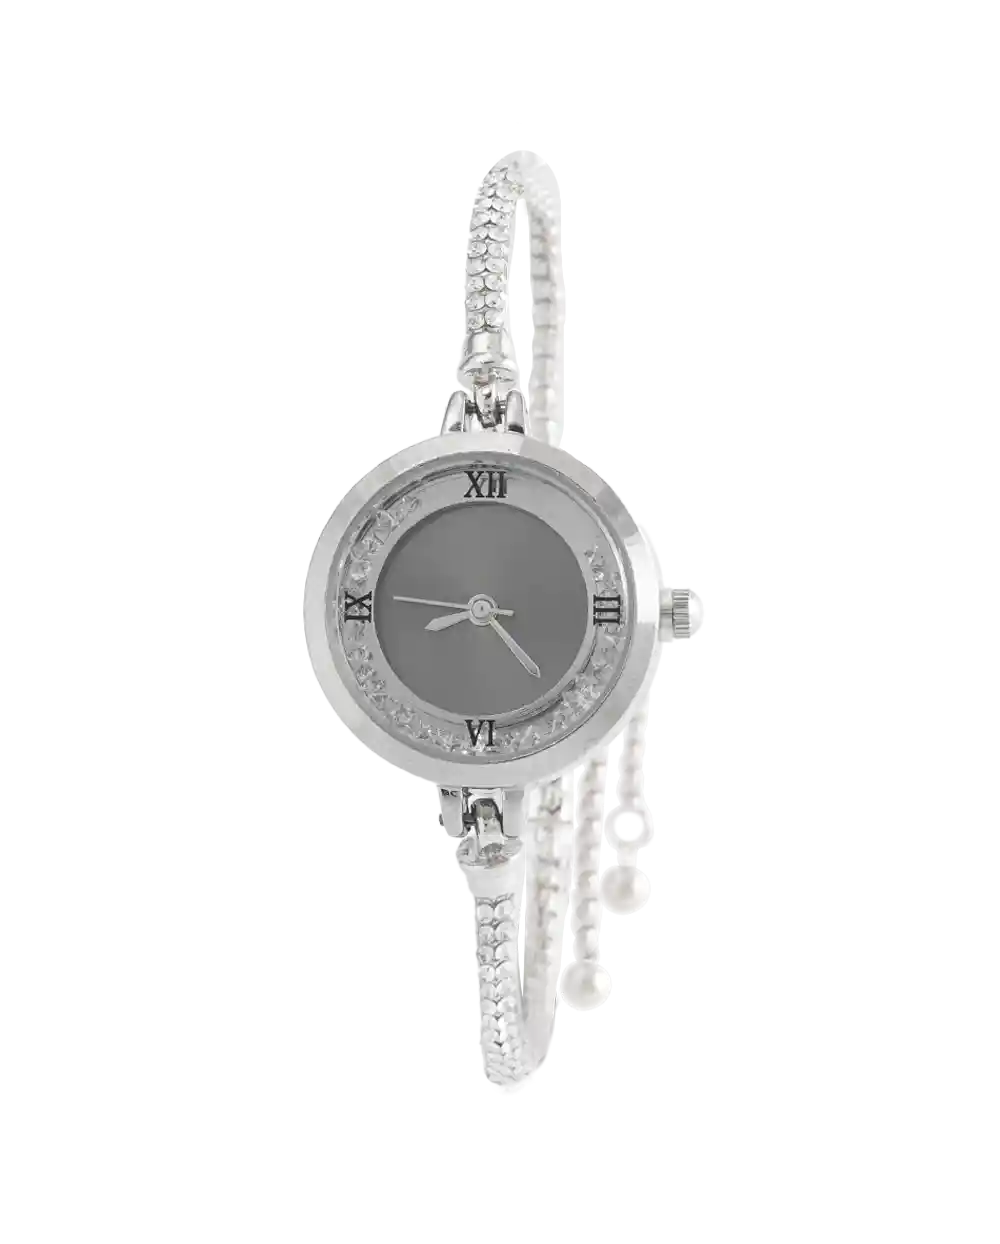 خرید ساعت مچی زنانه پیاژه PIAGET مدل 1951 دستبندی رنگ رزگلد با قفل کرواتی و فول نگین رنگ بندی بهترین قیمت به همراه ارسال رایگان به سراسر ایران